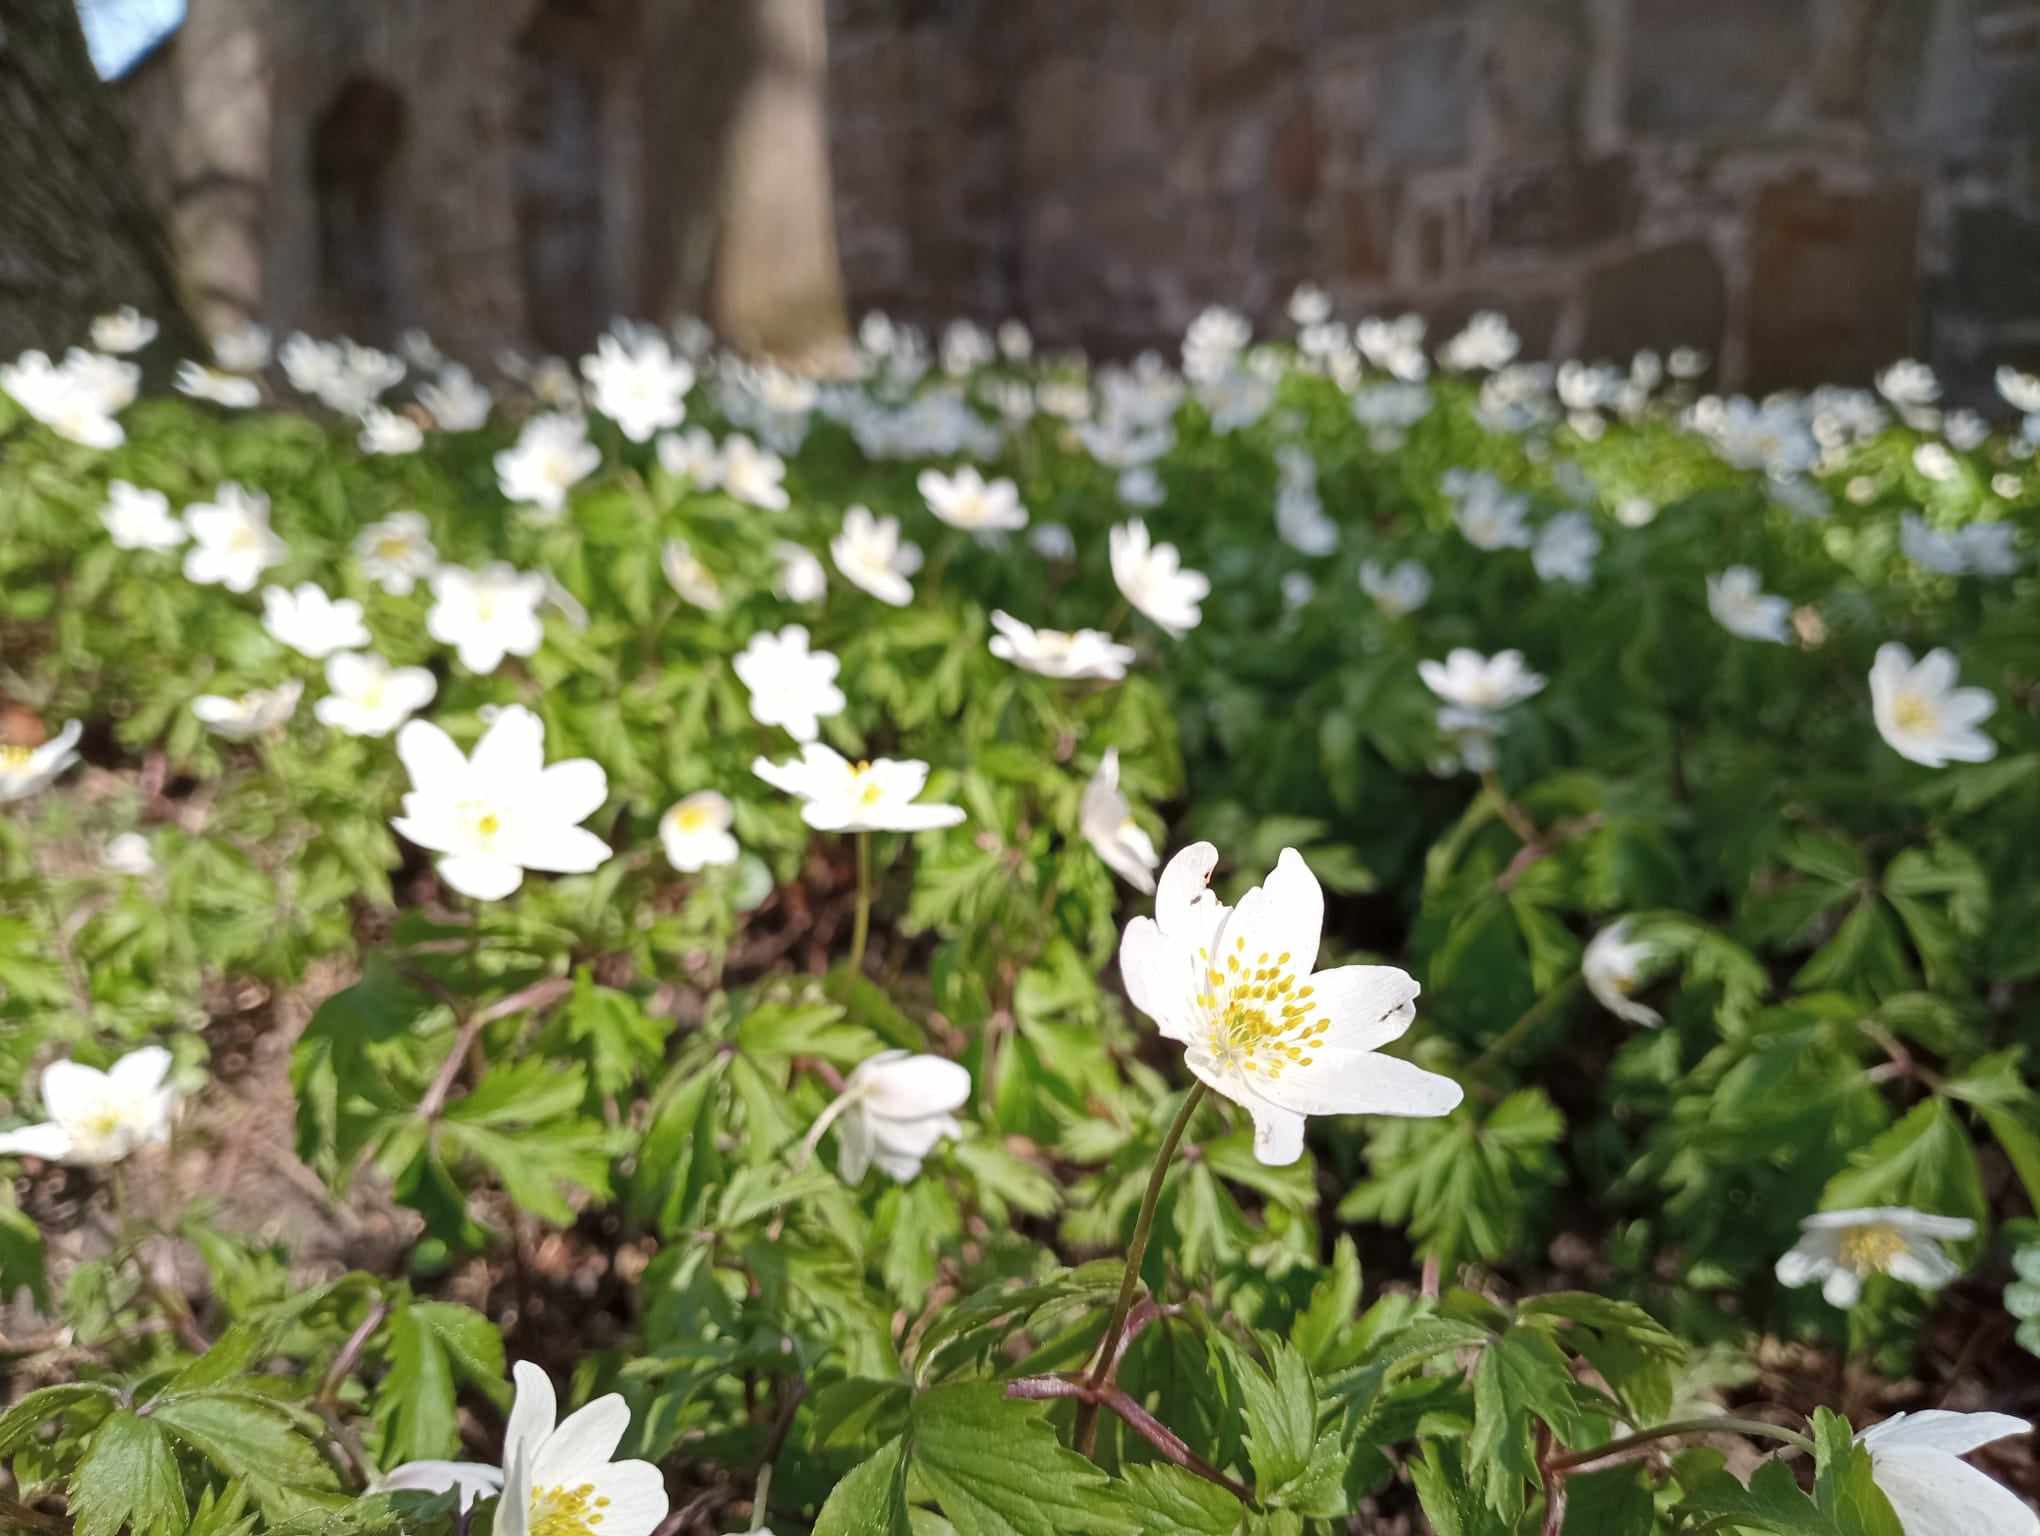 Wiosna w Parku Zamkowym - zakwity biae zawilce